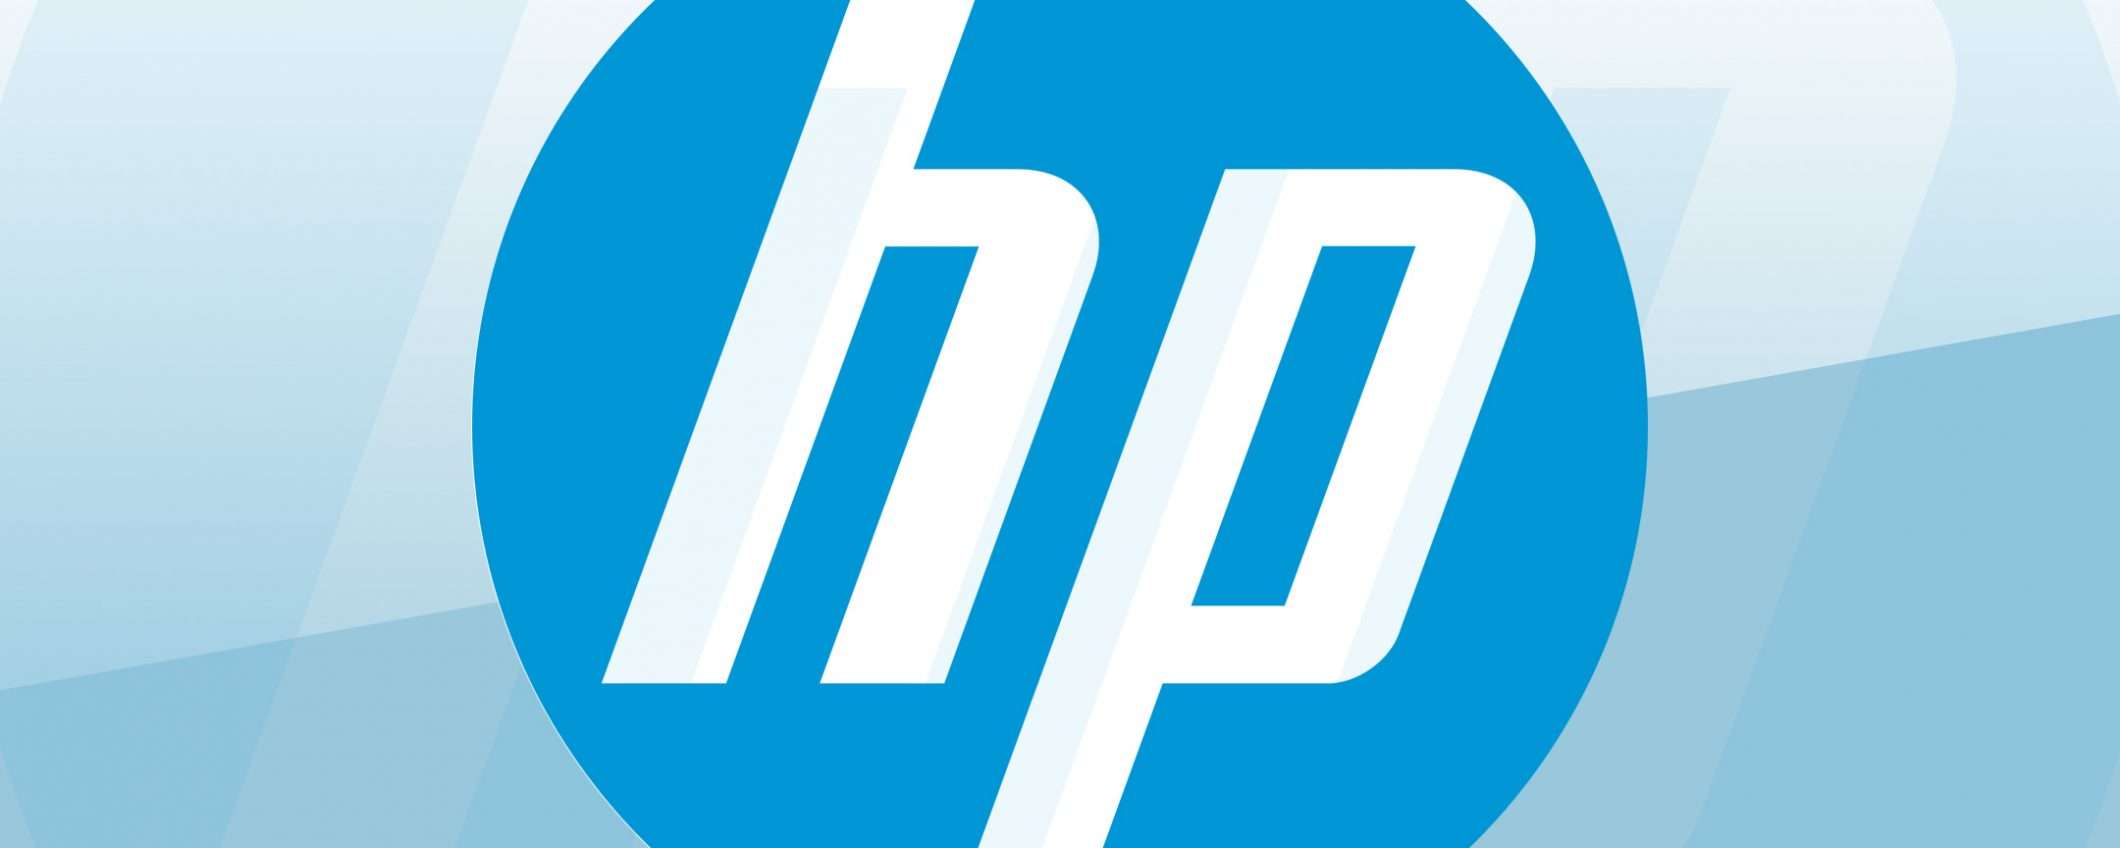 HP si riorganizza: riduzione personale e nuovo CEO